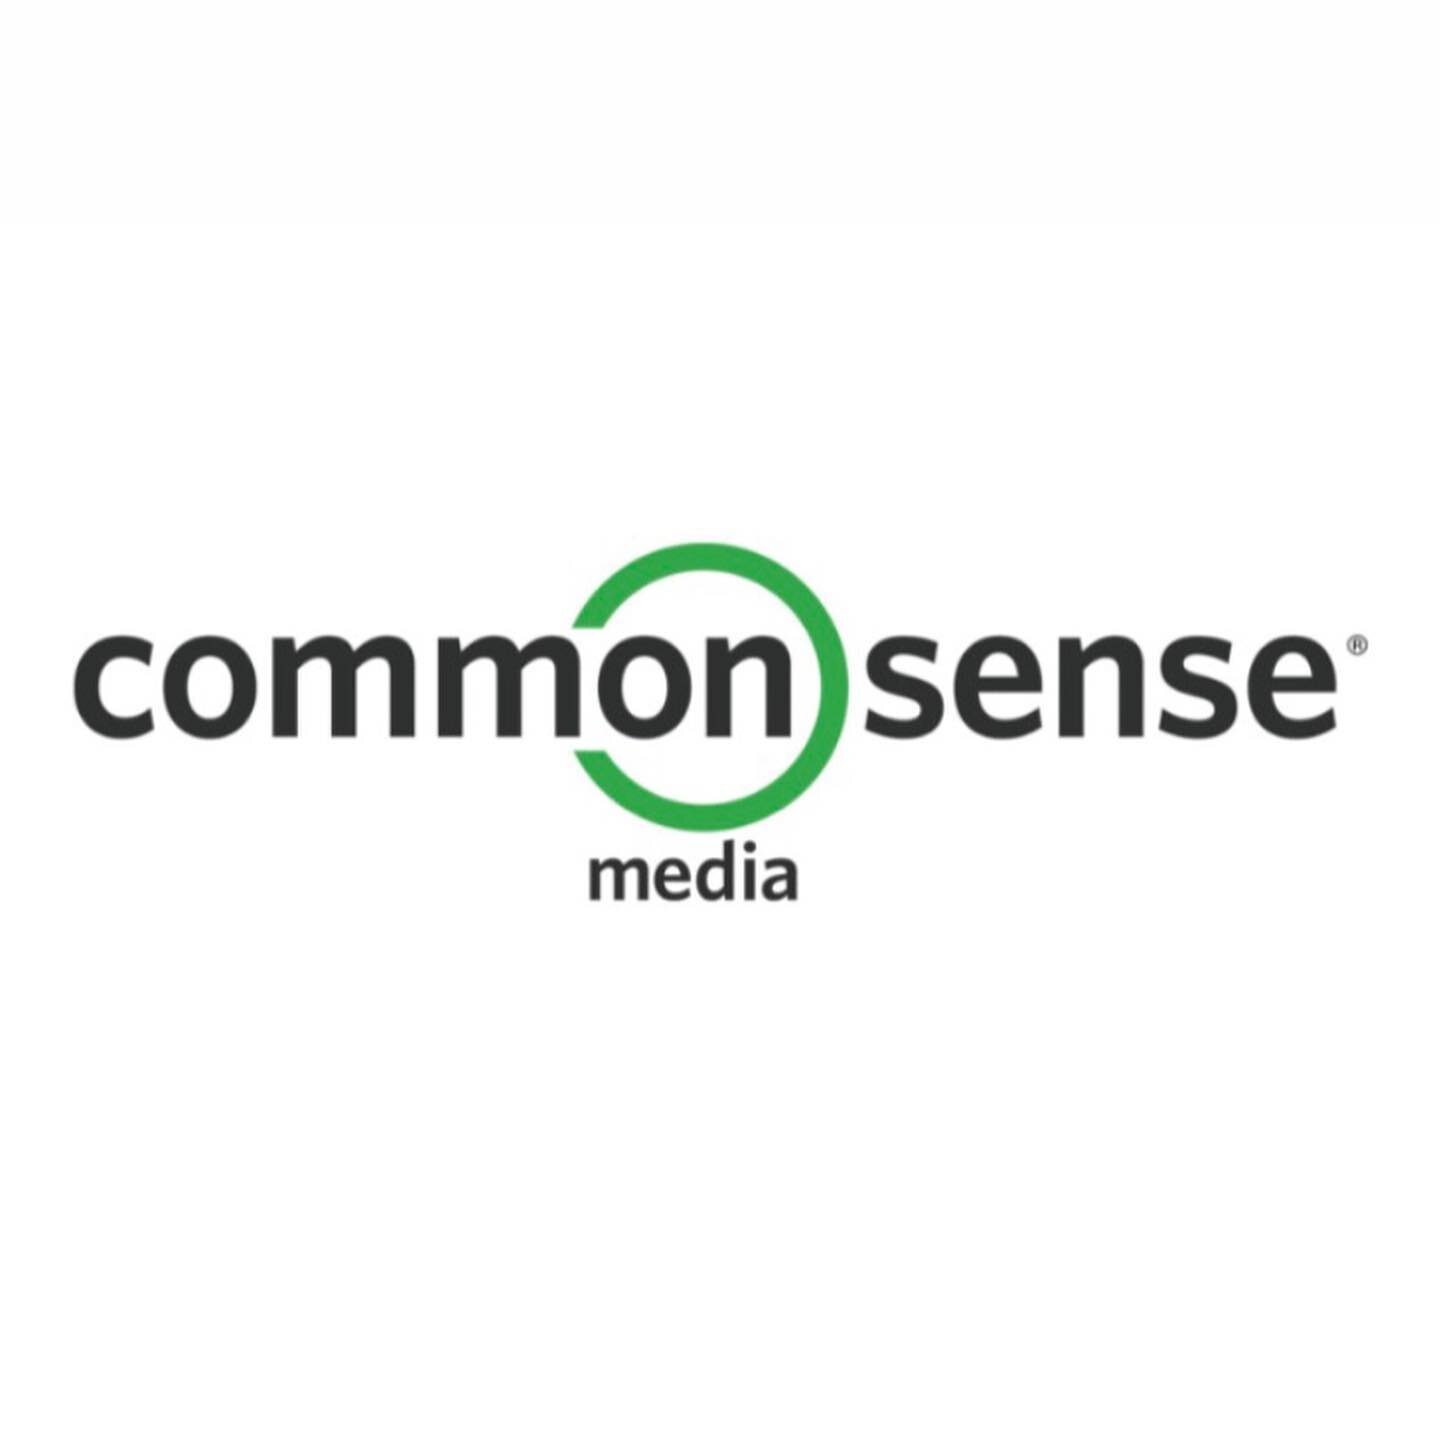 ⭐ MiniMind recomienda: @commonsenseorg⭐
 
Common Sense Media Organization es una organizaci&oacute;n sin &aacute;nimo de lucro americana que se dedica a fomentar un uso adecuado y educativo de las nuevas tecnolog&iacute;as.

En sus redes podr&eacute;